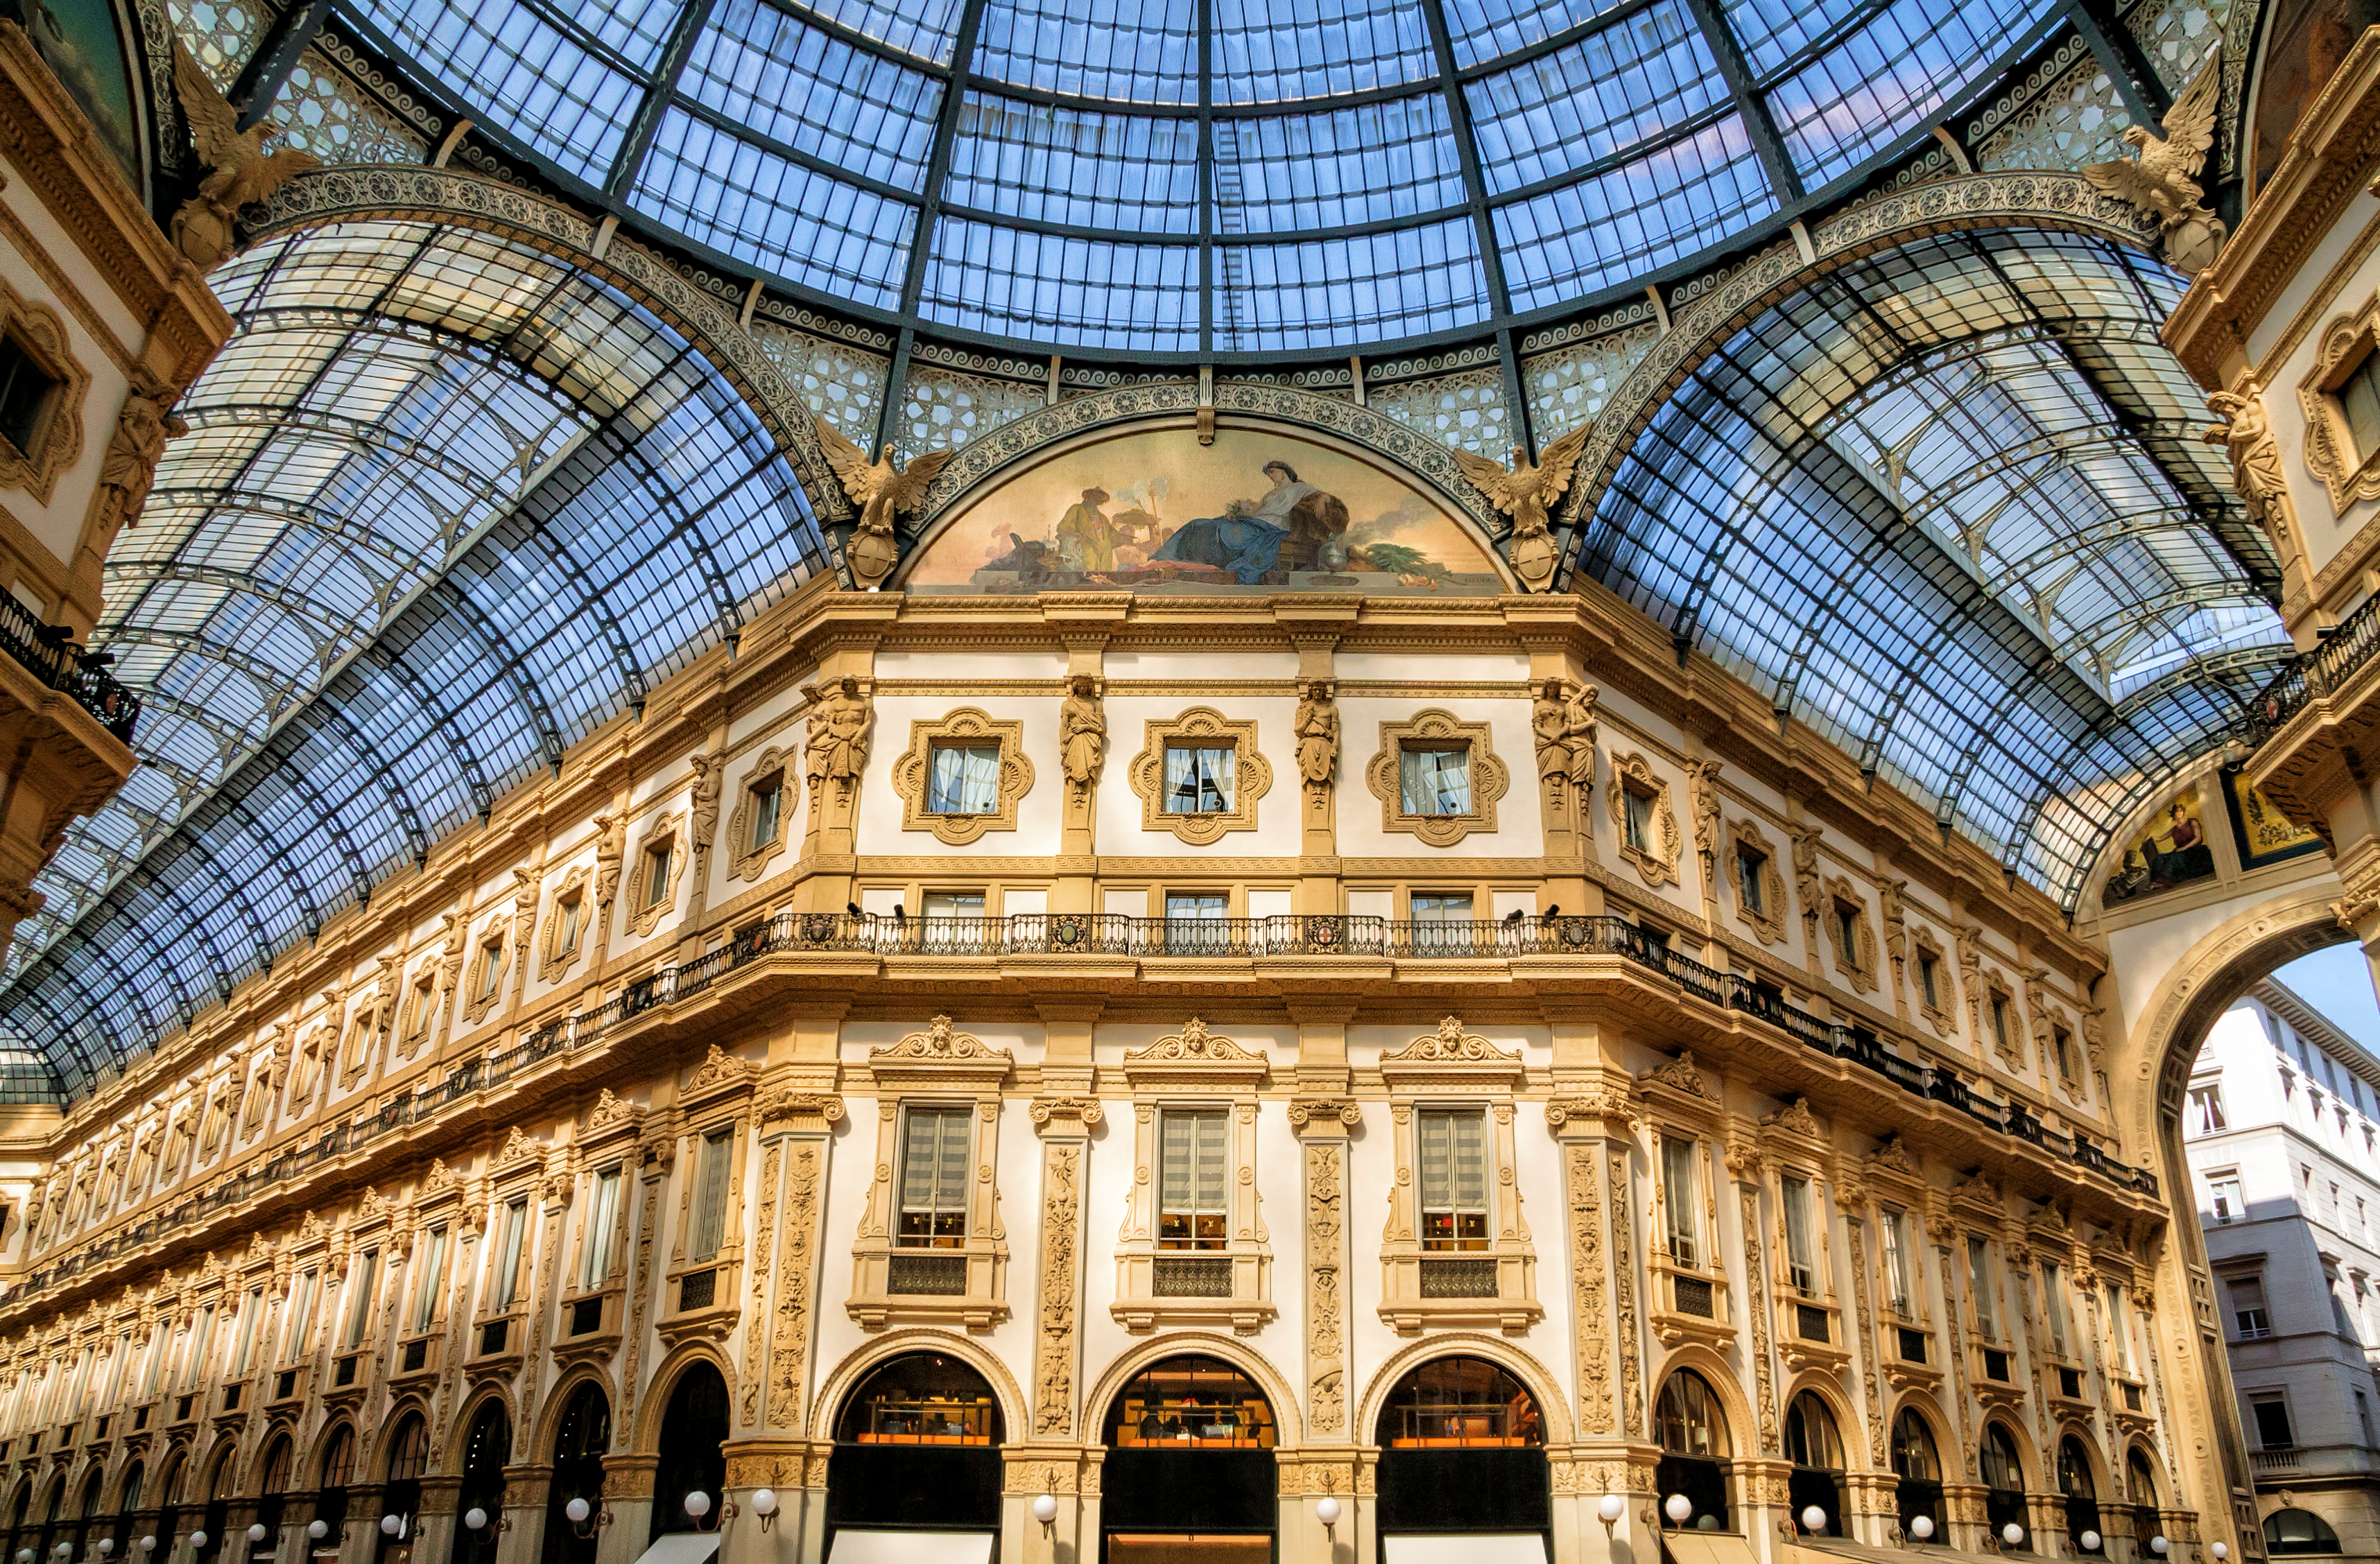 Planning your visit to Galleria Vittorio Emanuele II